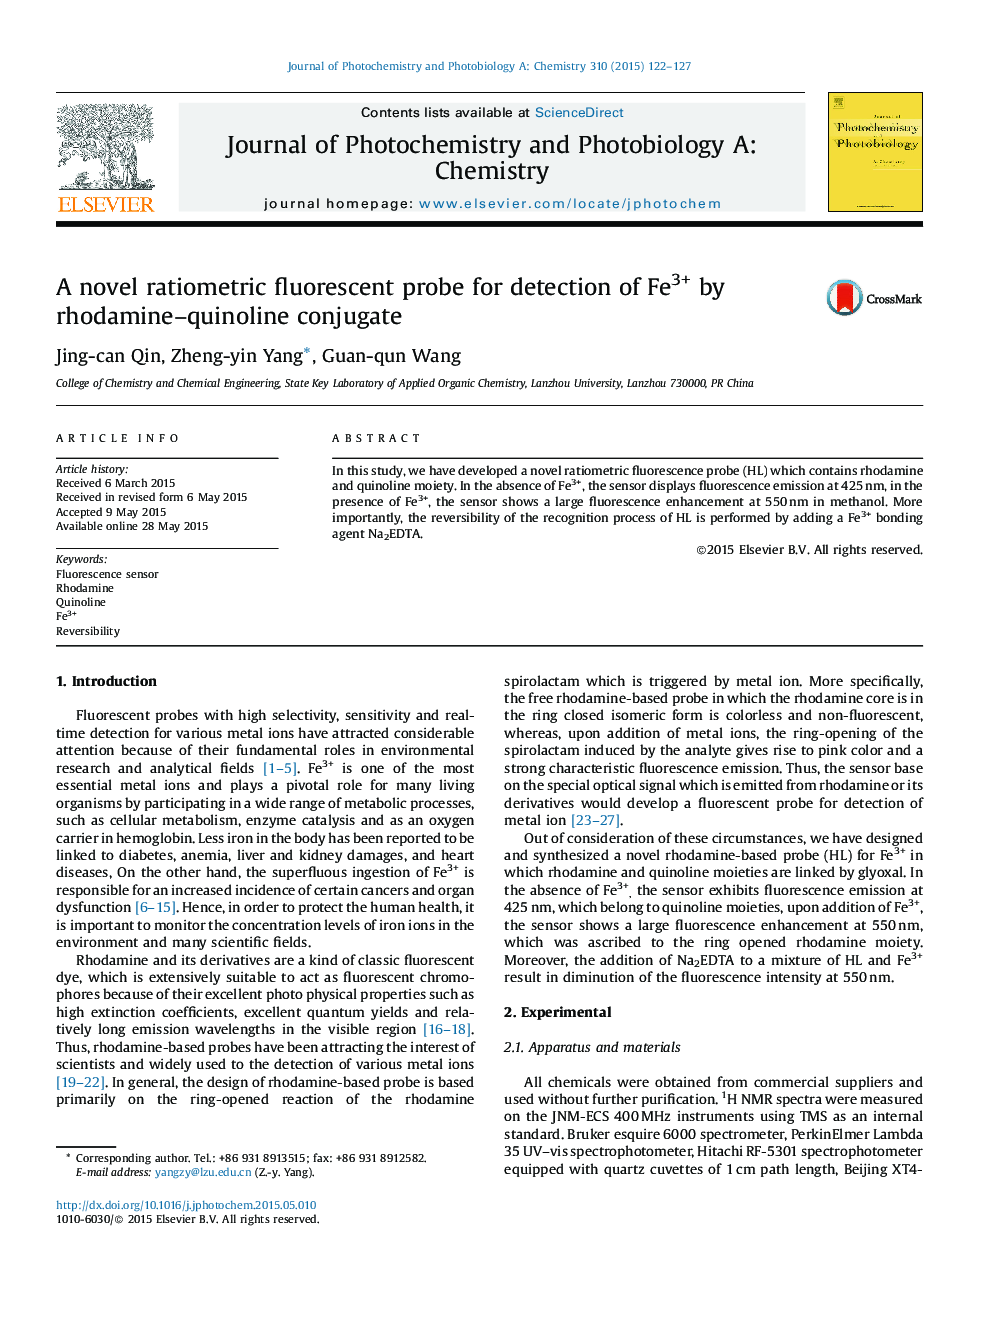 A novel ratiometric fluorescent probe for detection of Fe3+ by rhodamine–quinoline conjugate